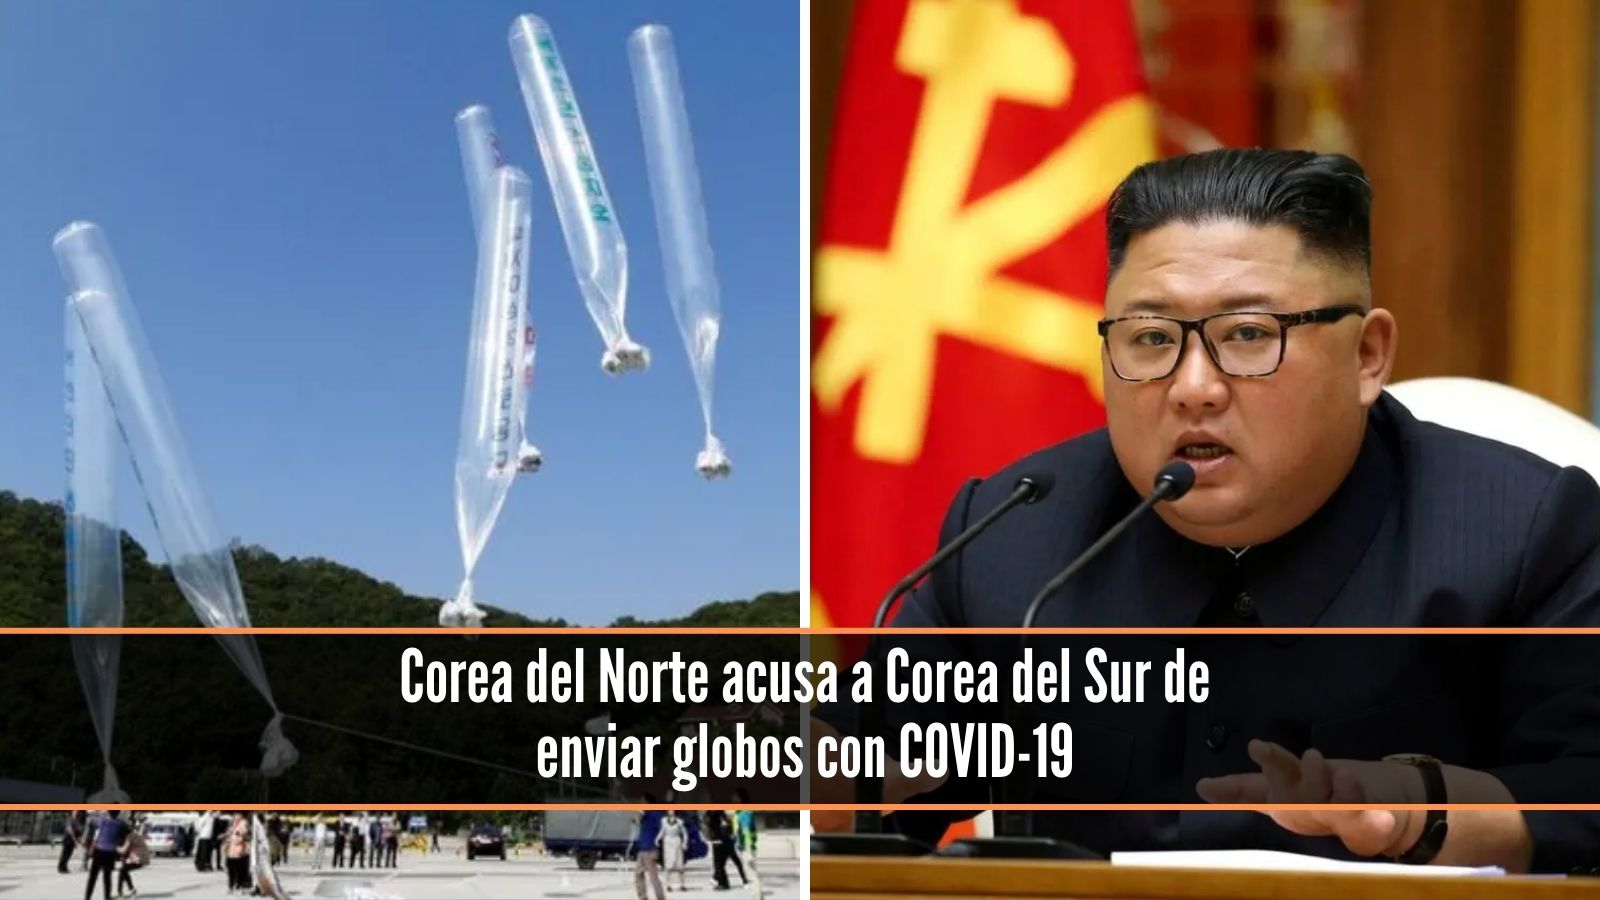 Corea del Norte acusa a Corea del Sur de enviar globos con COVID-19